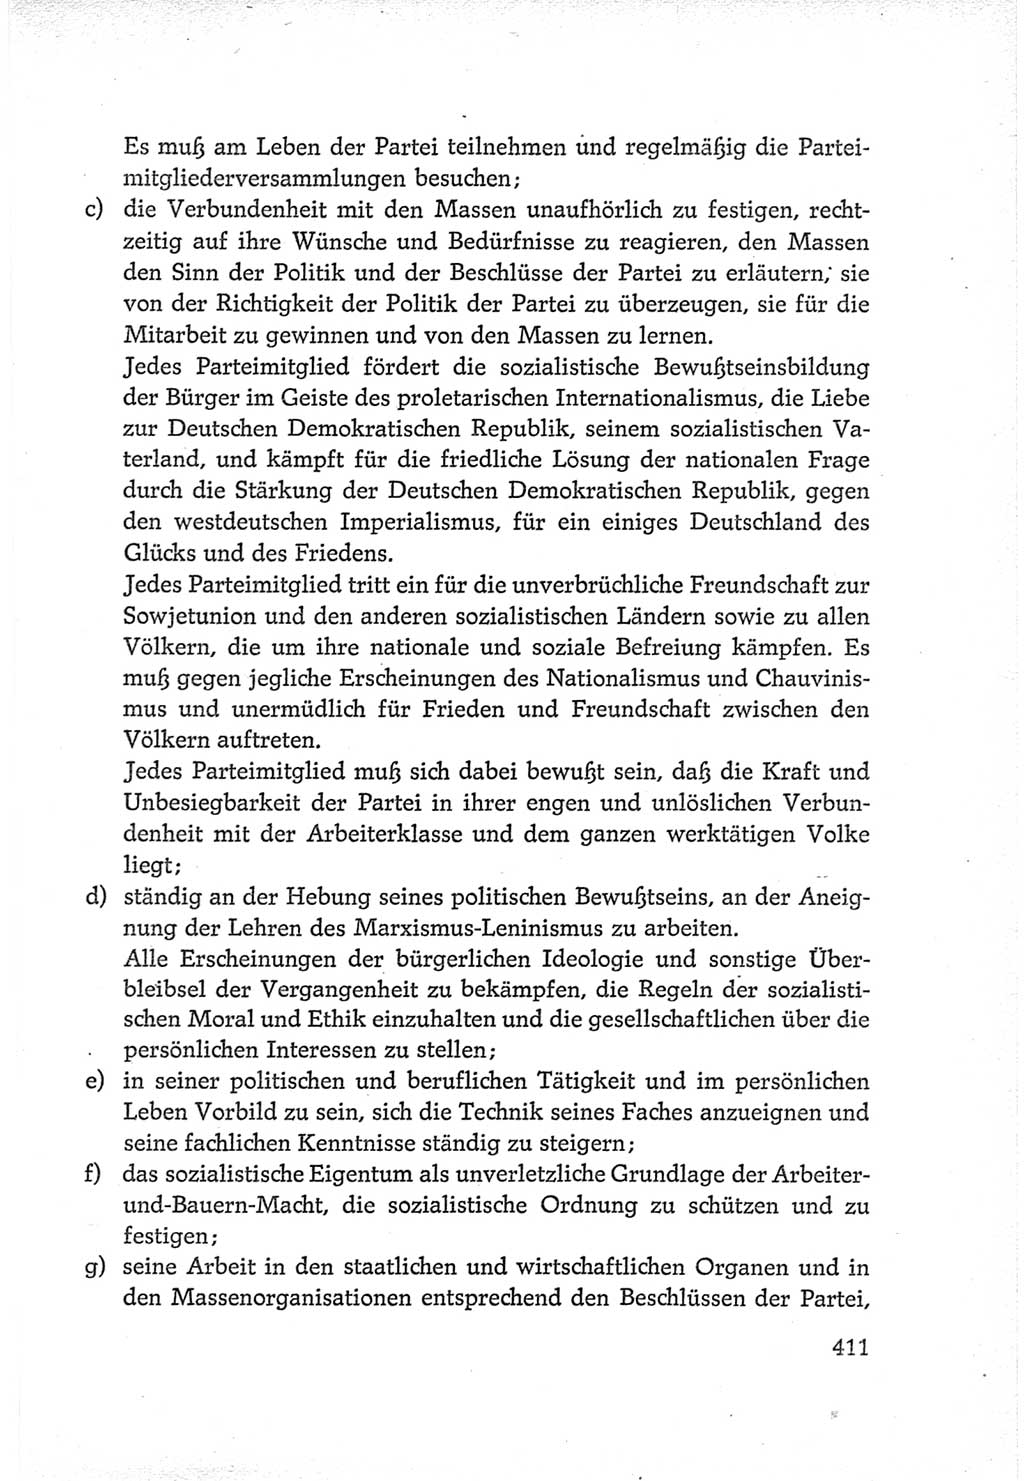 Protokoll der Verhandlungen des Ⅵ. Parteitages der Sozialistischen Einheitspartei Deutschlands (SED) [Deutsche Demokratische Republik (DDR)] 1963, Band Ⅳ, Seite 411 (Prot. Verh. Ⅵ. PT SED DDR 1963, Bd. Ⅳ, S. 411)